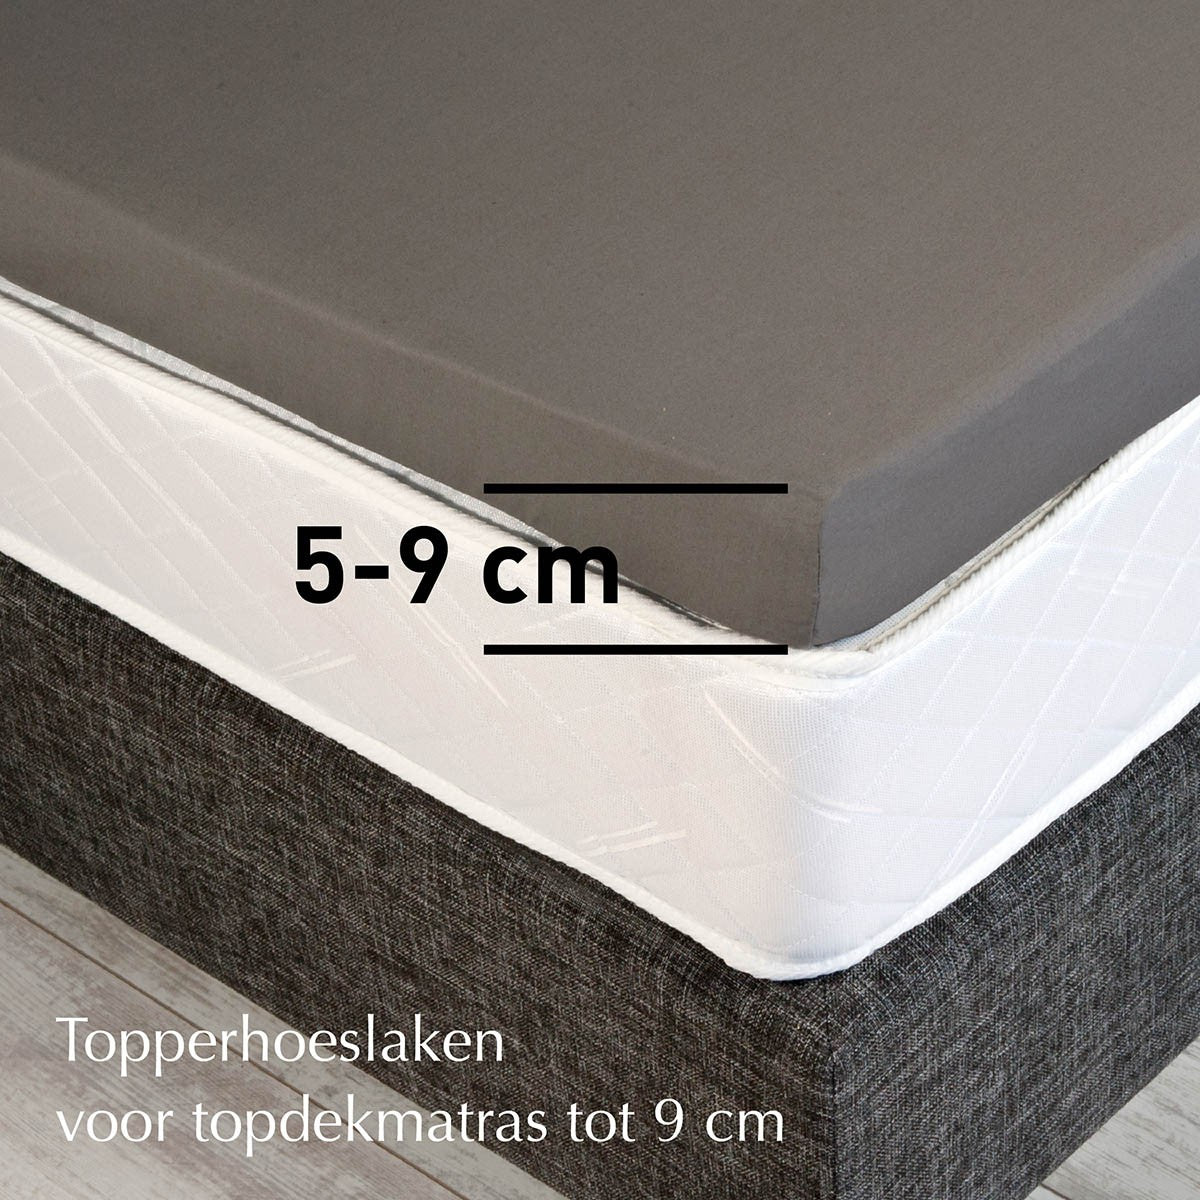 TOPPER HOESLAKEN - Madeira Micromodal Tencel 300TC 5-9 cm